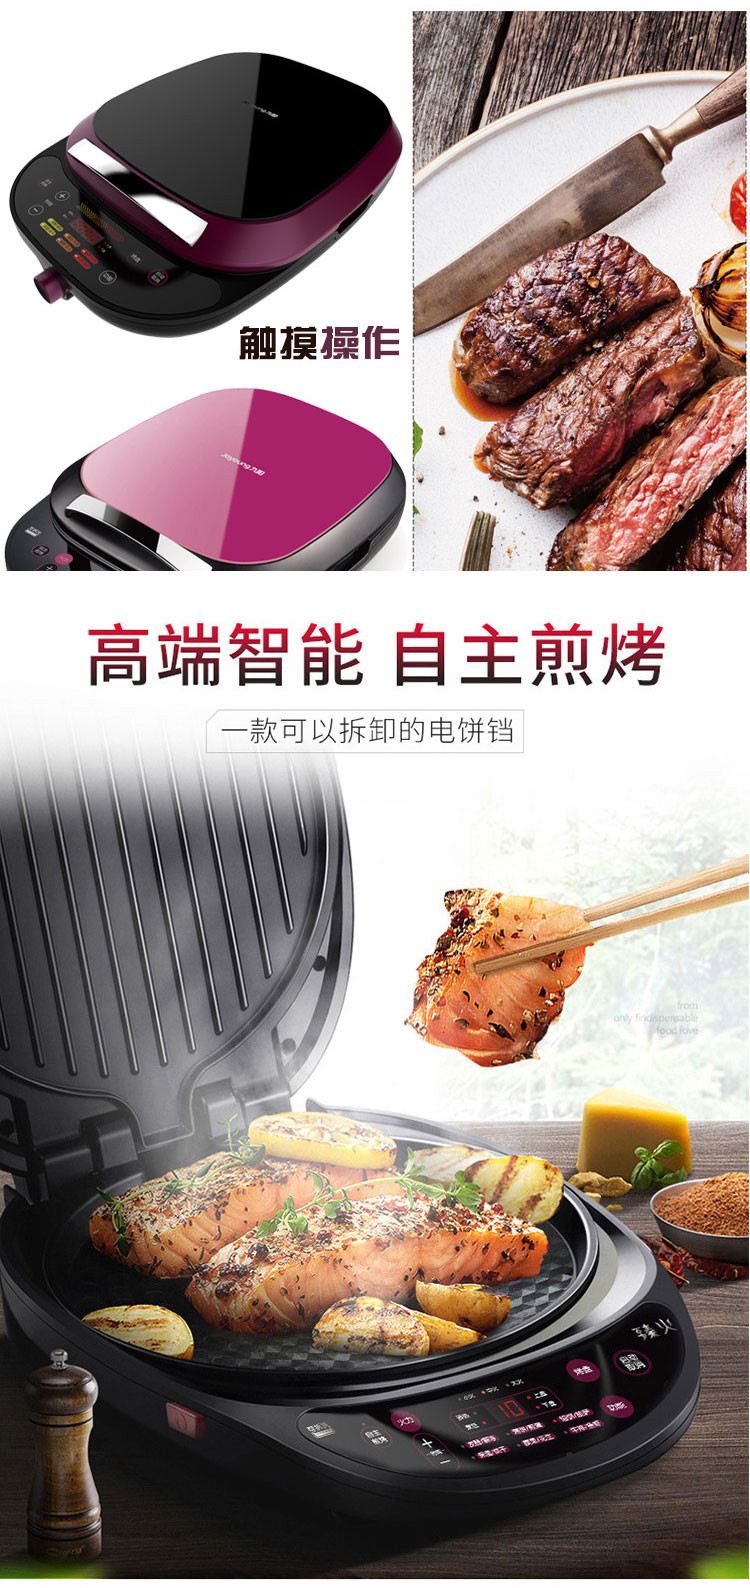 九阳/Joyoung JK30-D2 电饼铛家用可拆洗煎烤机